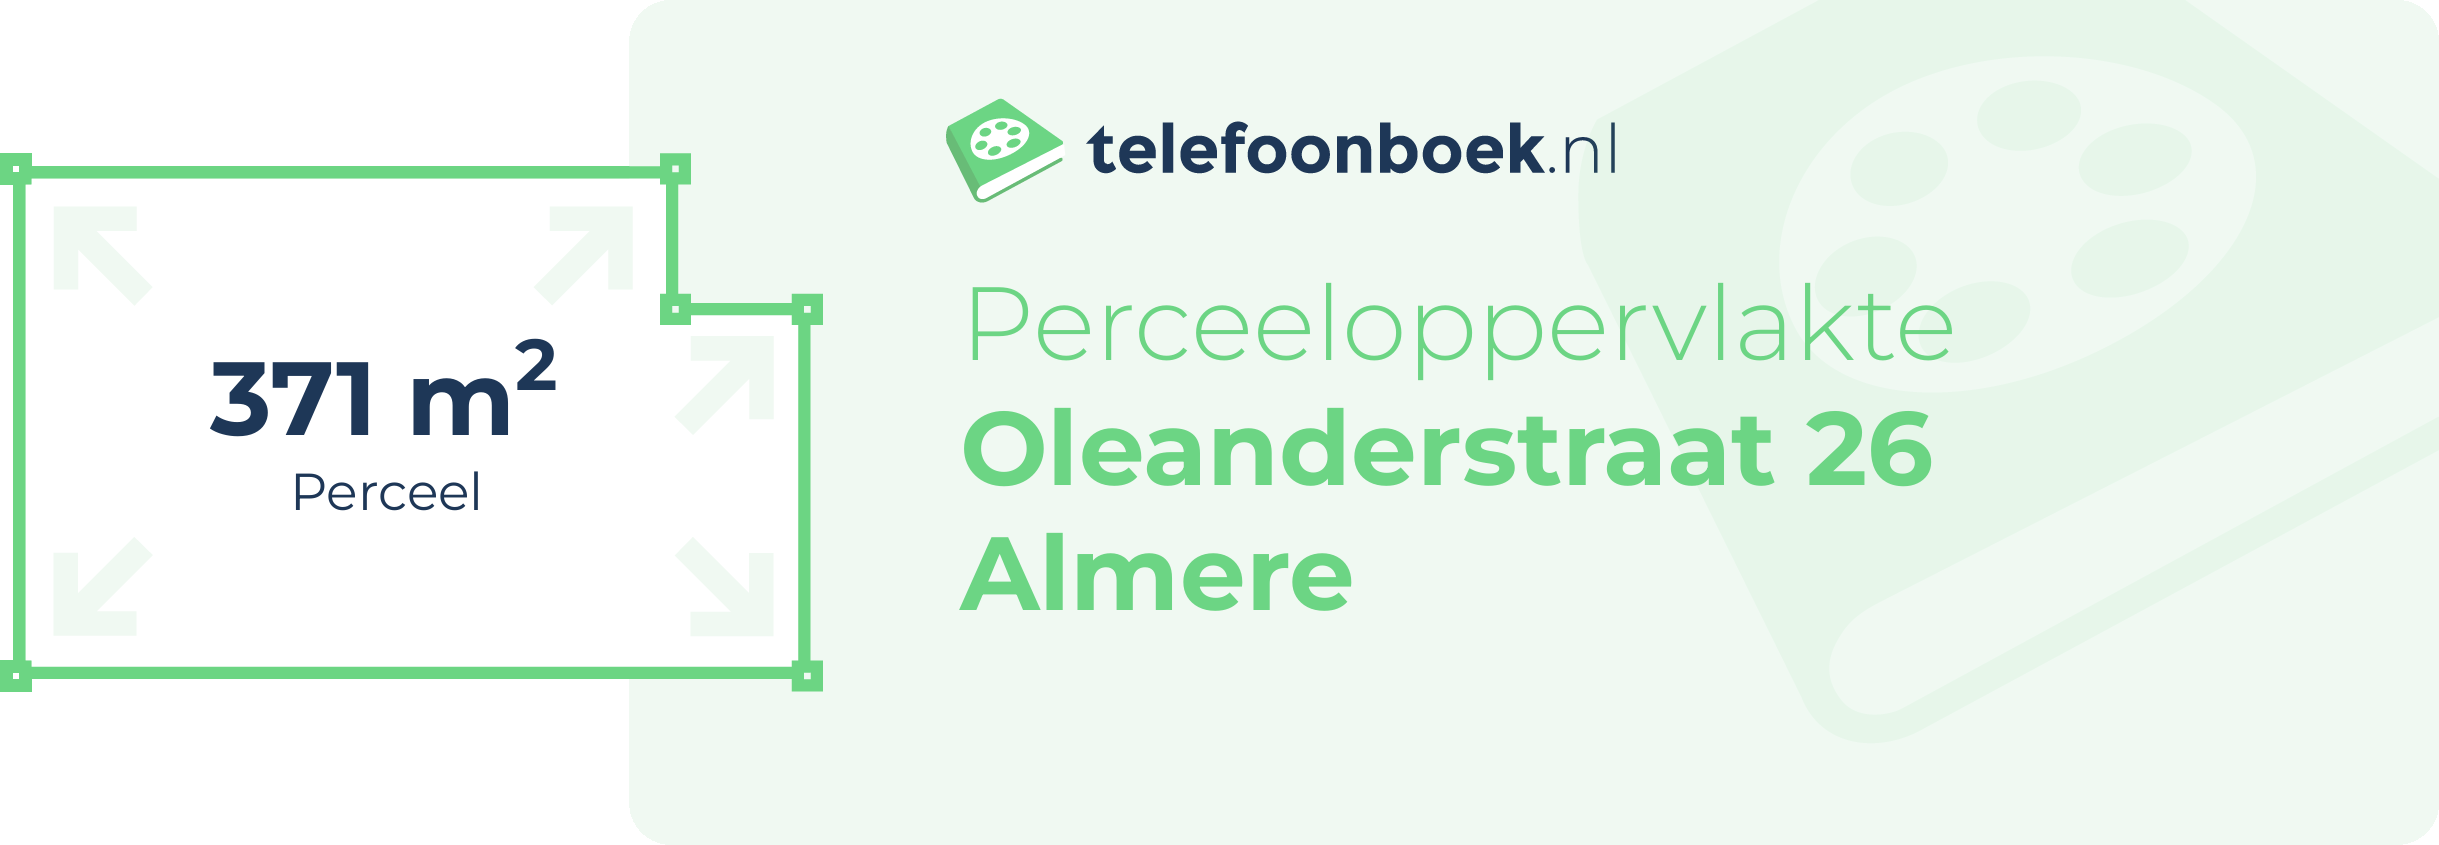 Perceeloppervlakte Oleanderstraat 26 Almere